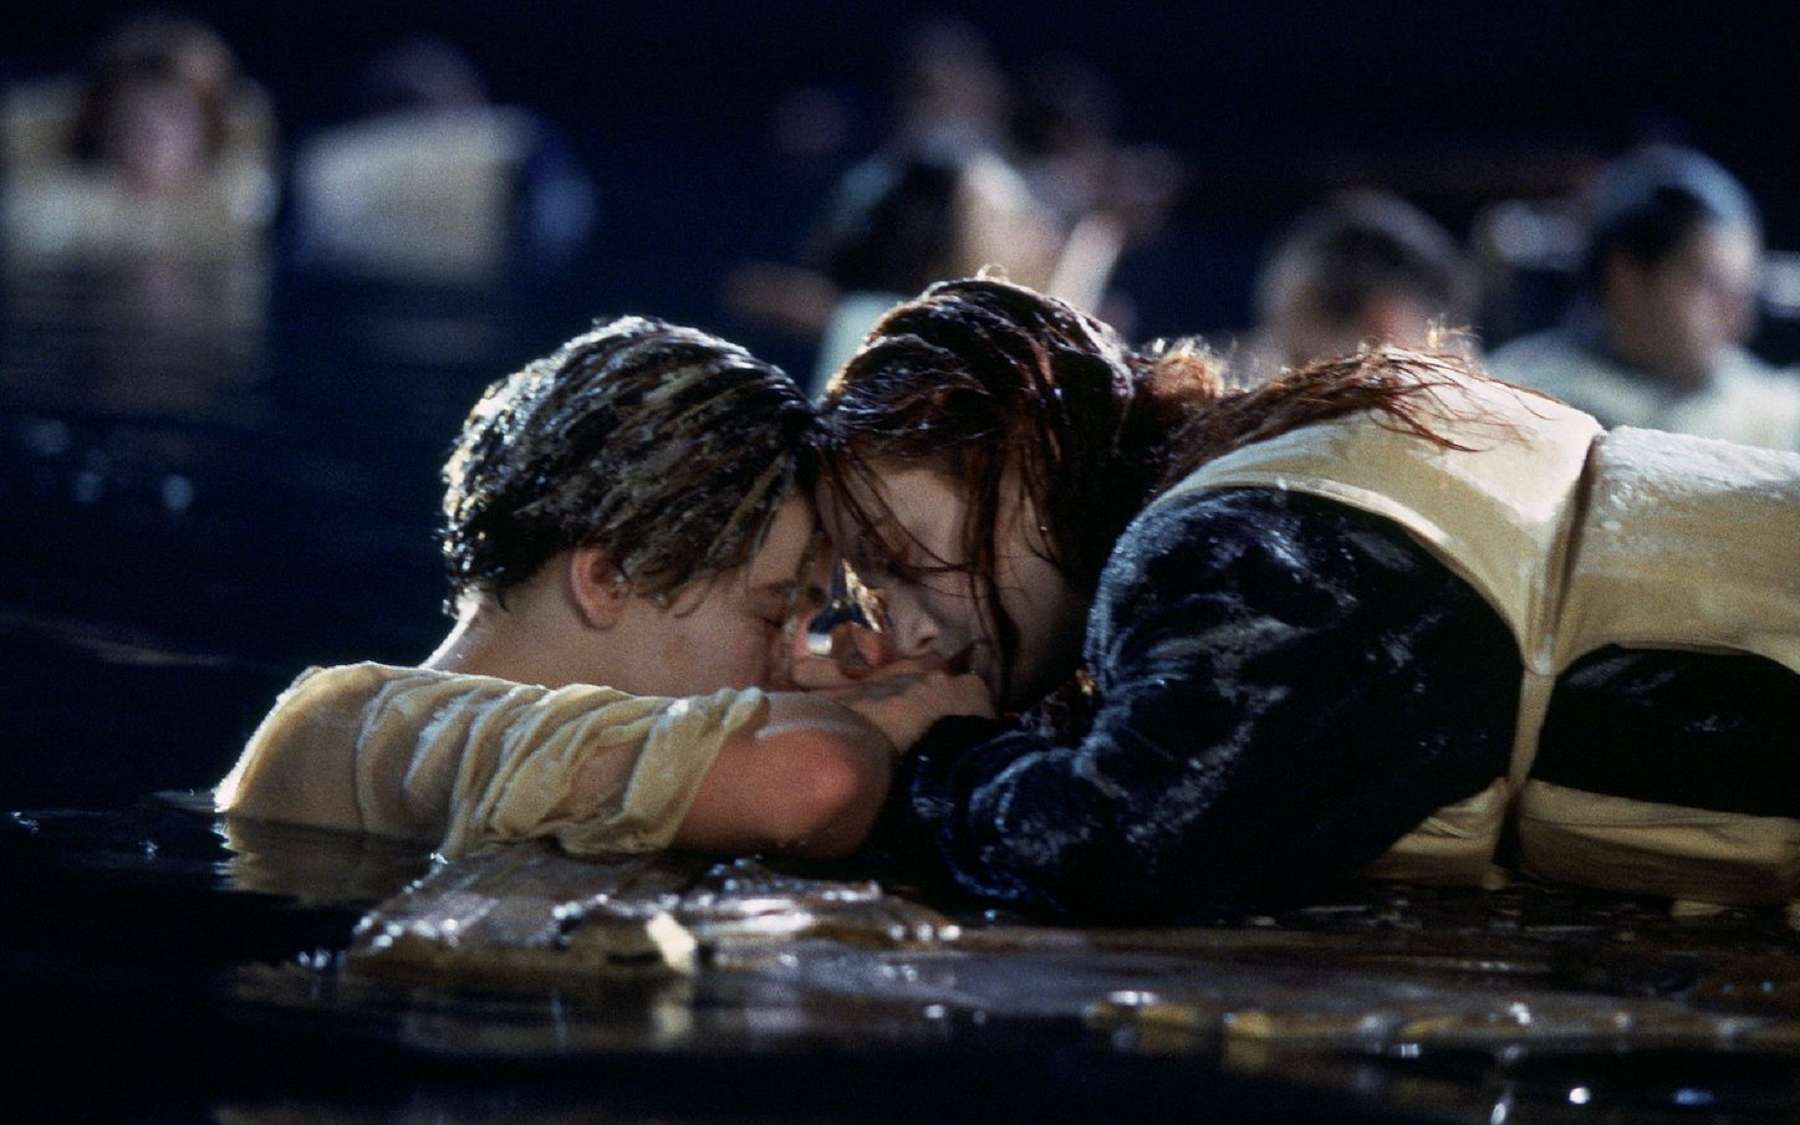 Titanic : une étude scientifique pour déterminer les chances de survie du héros du film